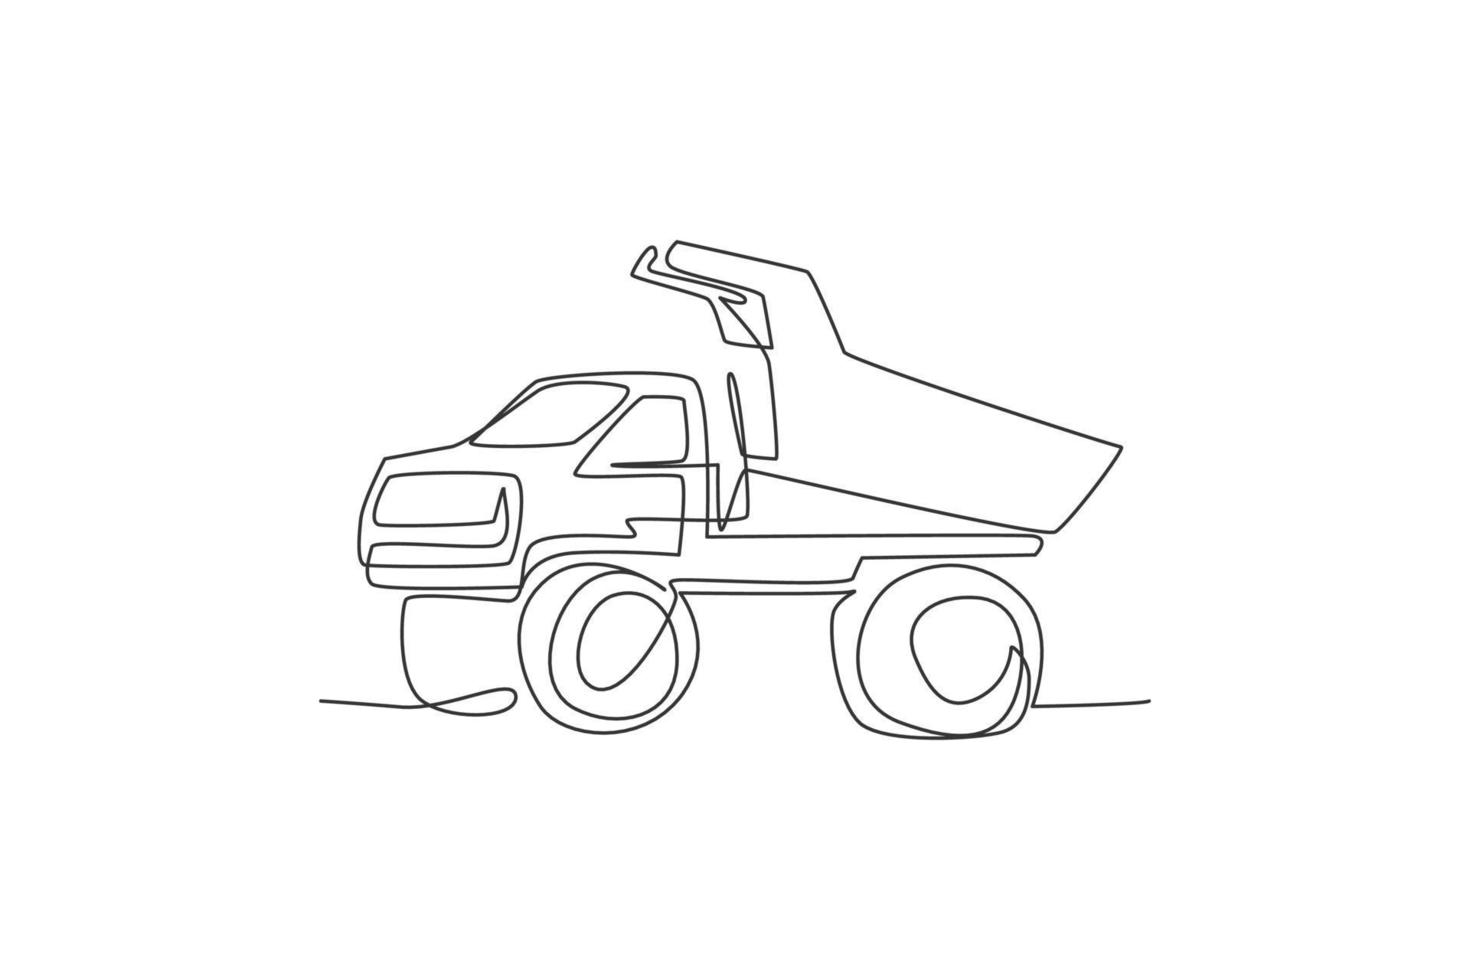 um único desenho de linha de grande caminhão basculante de mineração para carregar carvão e ilustração vetorial de produtos de mineração. conceito de veículo de transporte pesado. gráfico de desenho moderno de linha contínua vetor